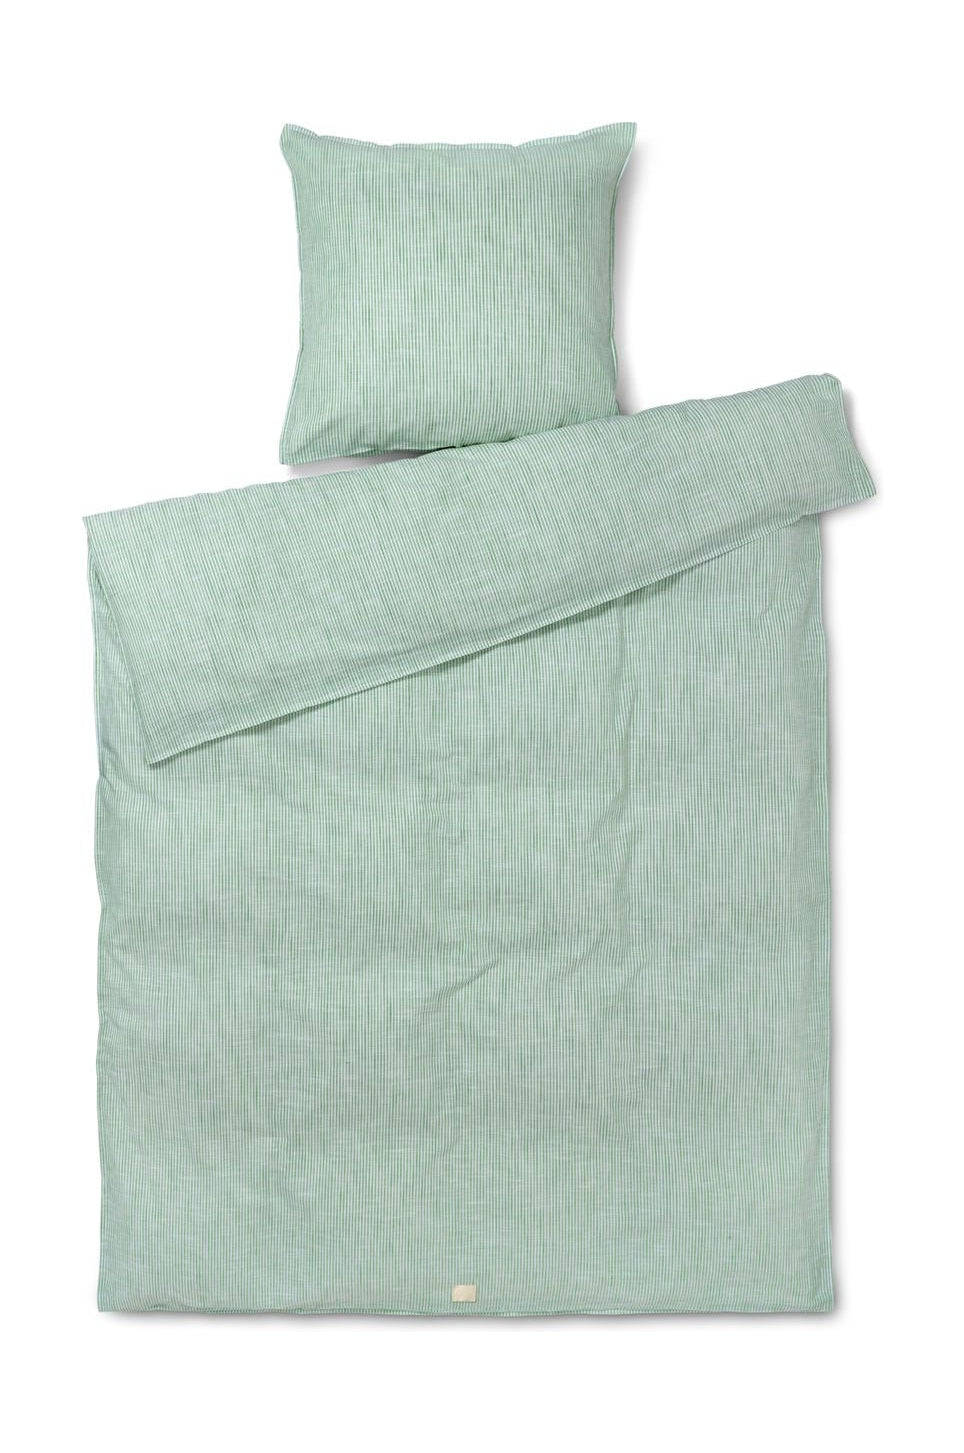 Juna Monokrom linjer sängkläder 140 x200 cm, grönt/vitt